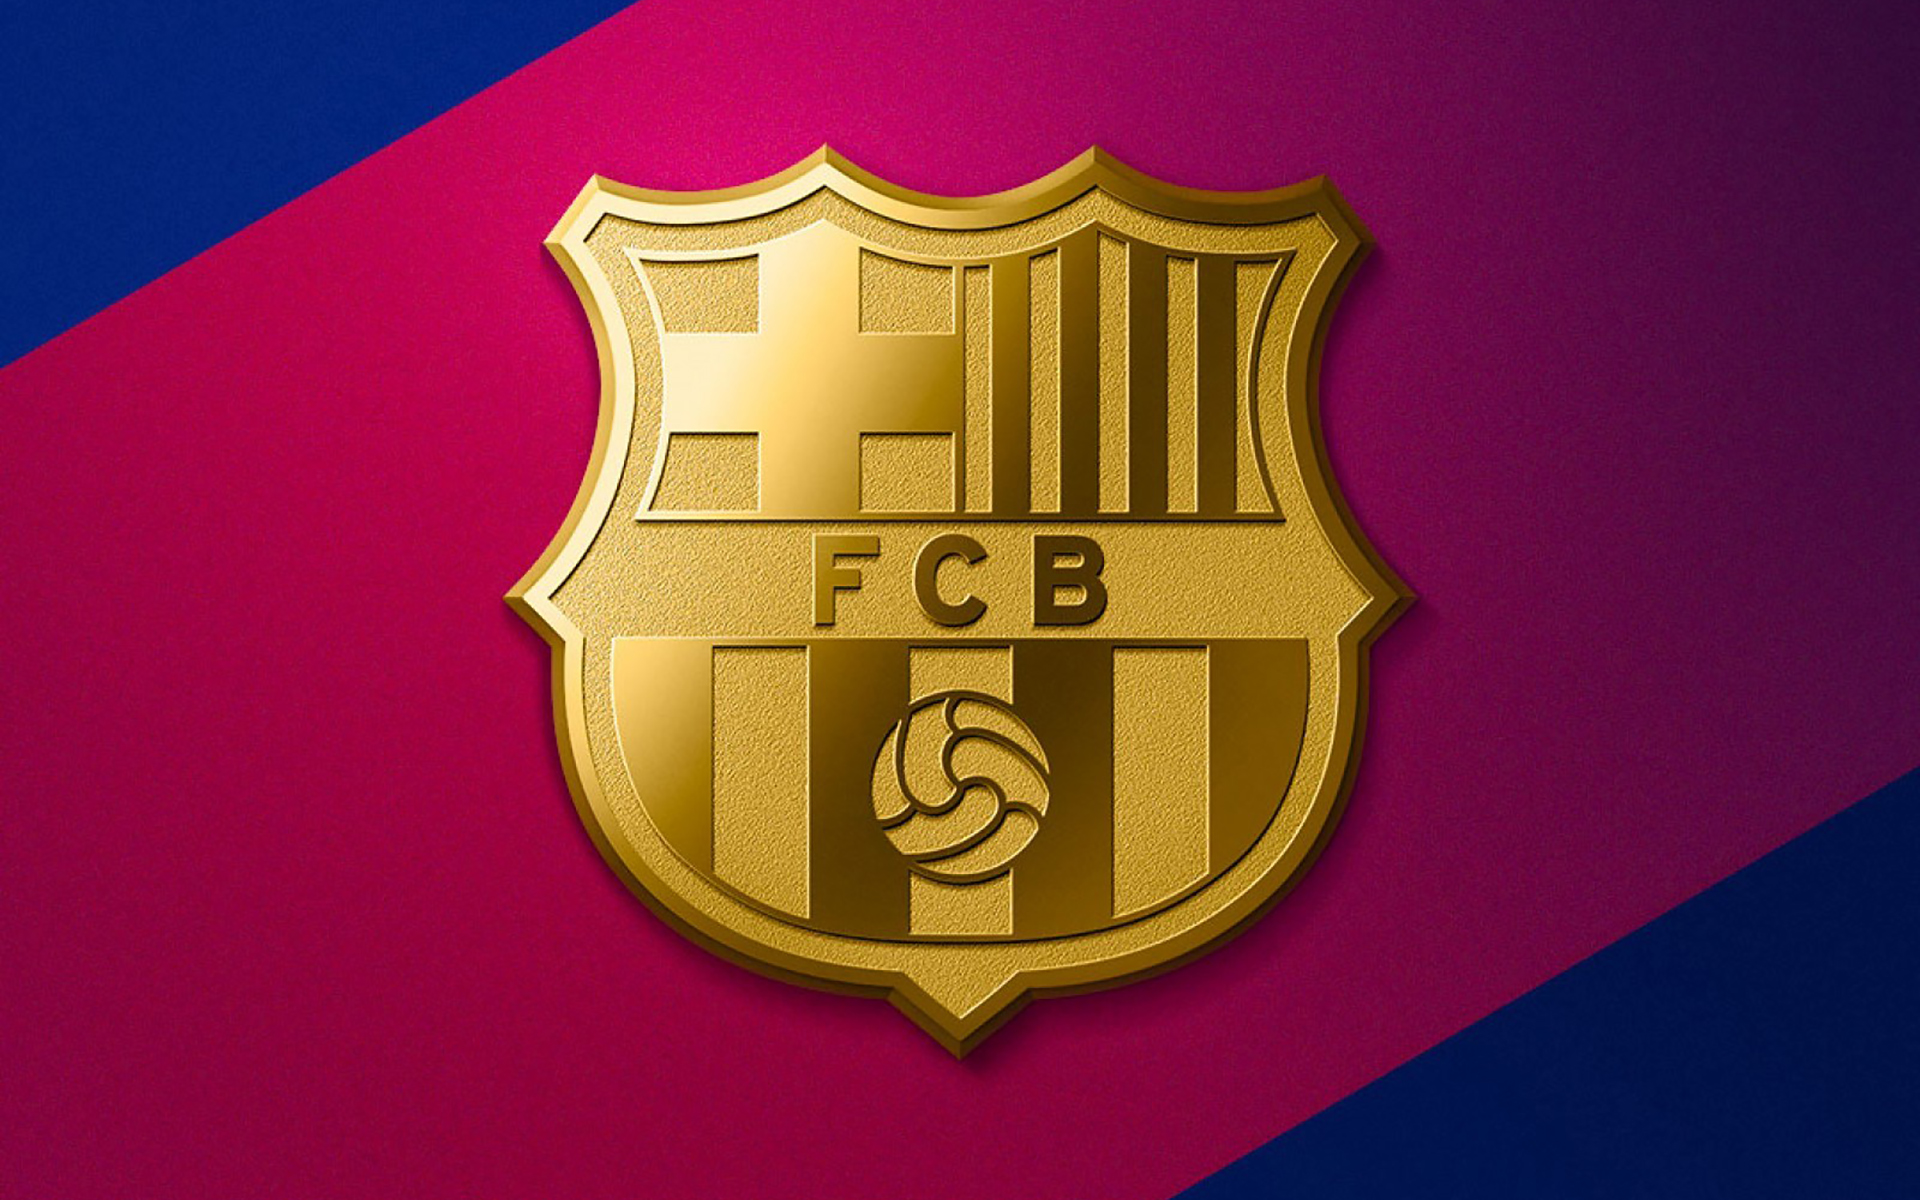 barca-logo-hd-fc-barcelona-logo-nice-fc-barcelona-logo-16230